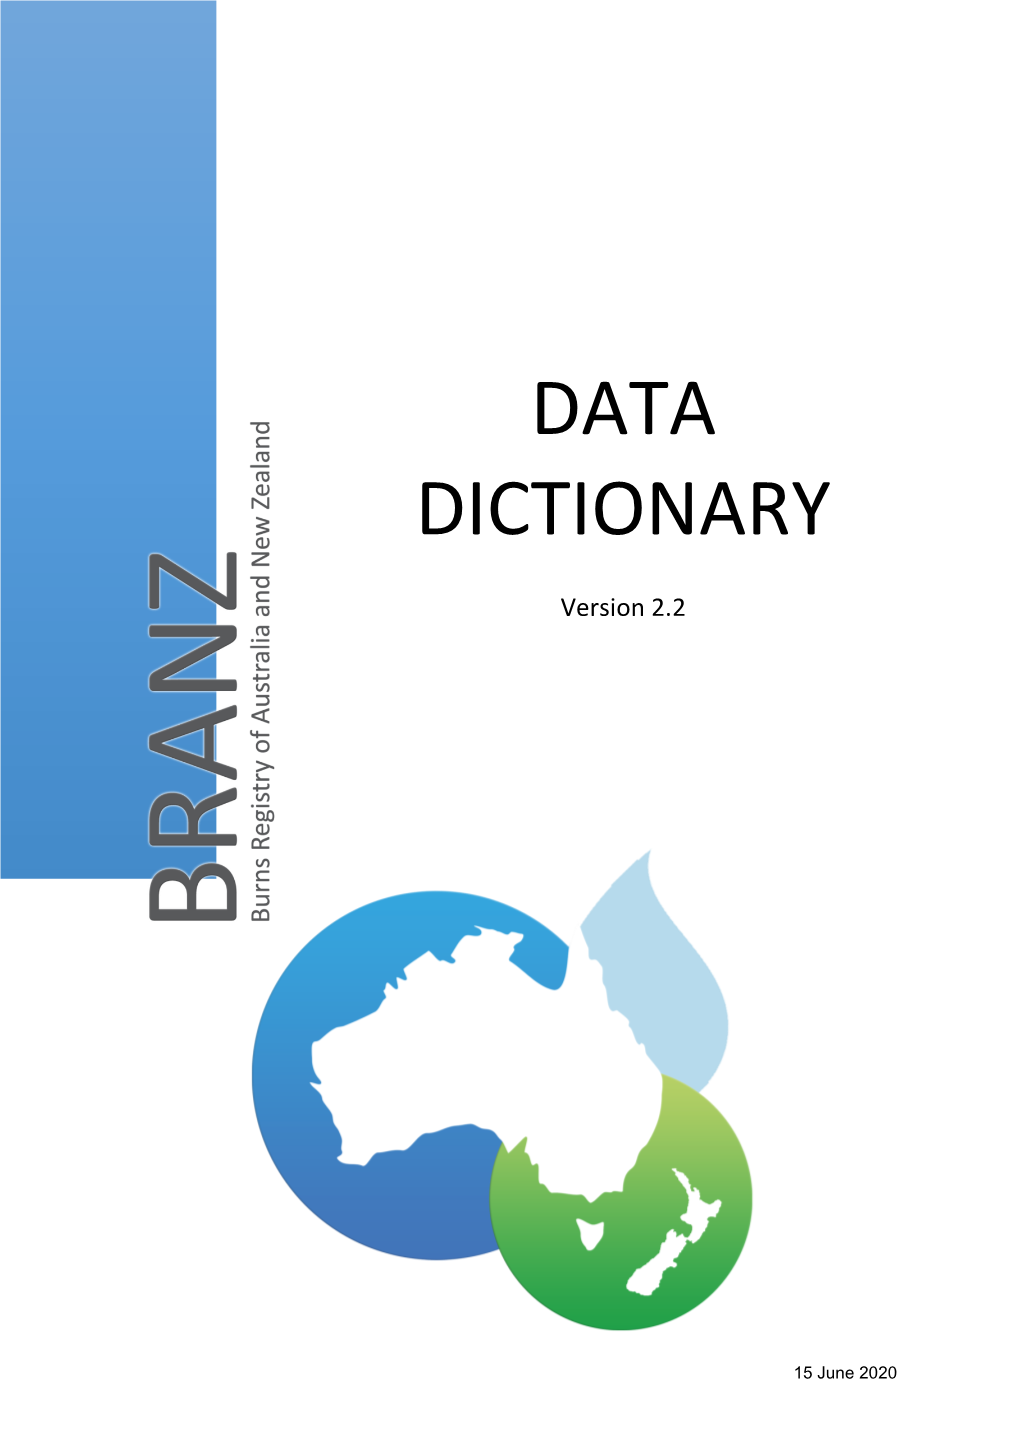 BRANZ Data Dictionary